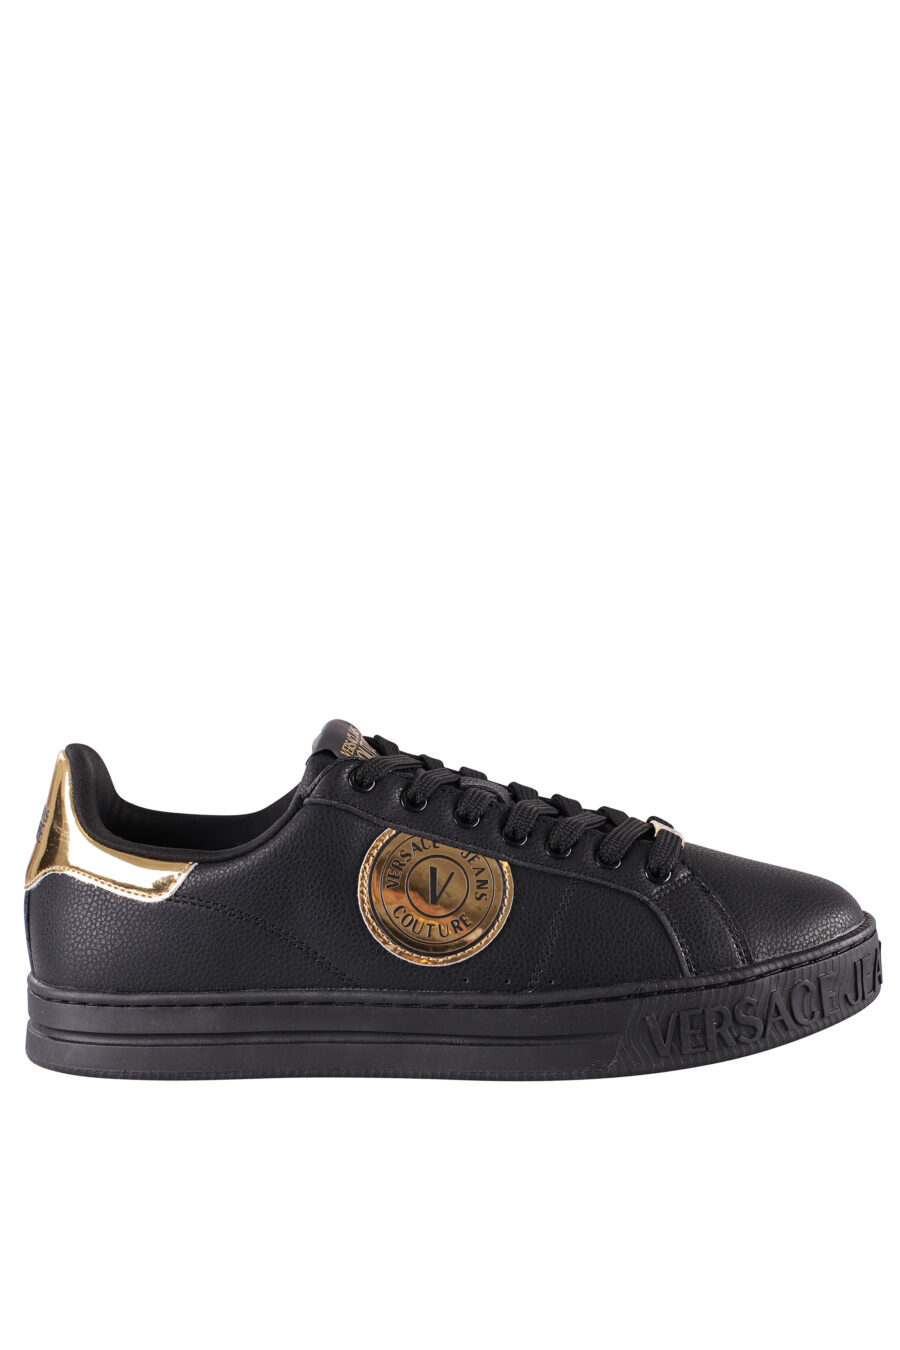 Zapatillas negras y doradas con logo semicirculo - IMG 8482